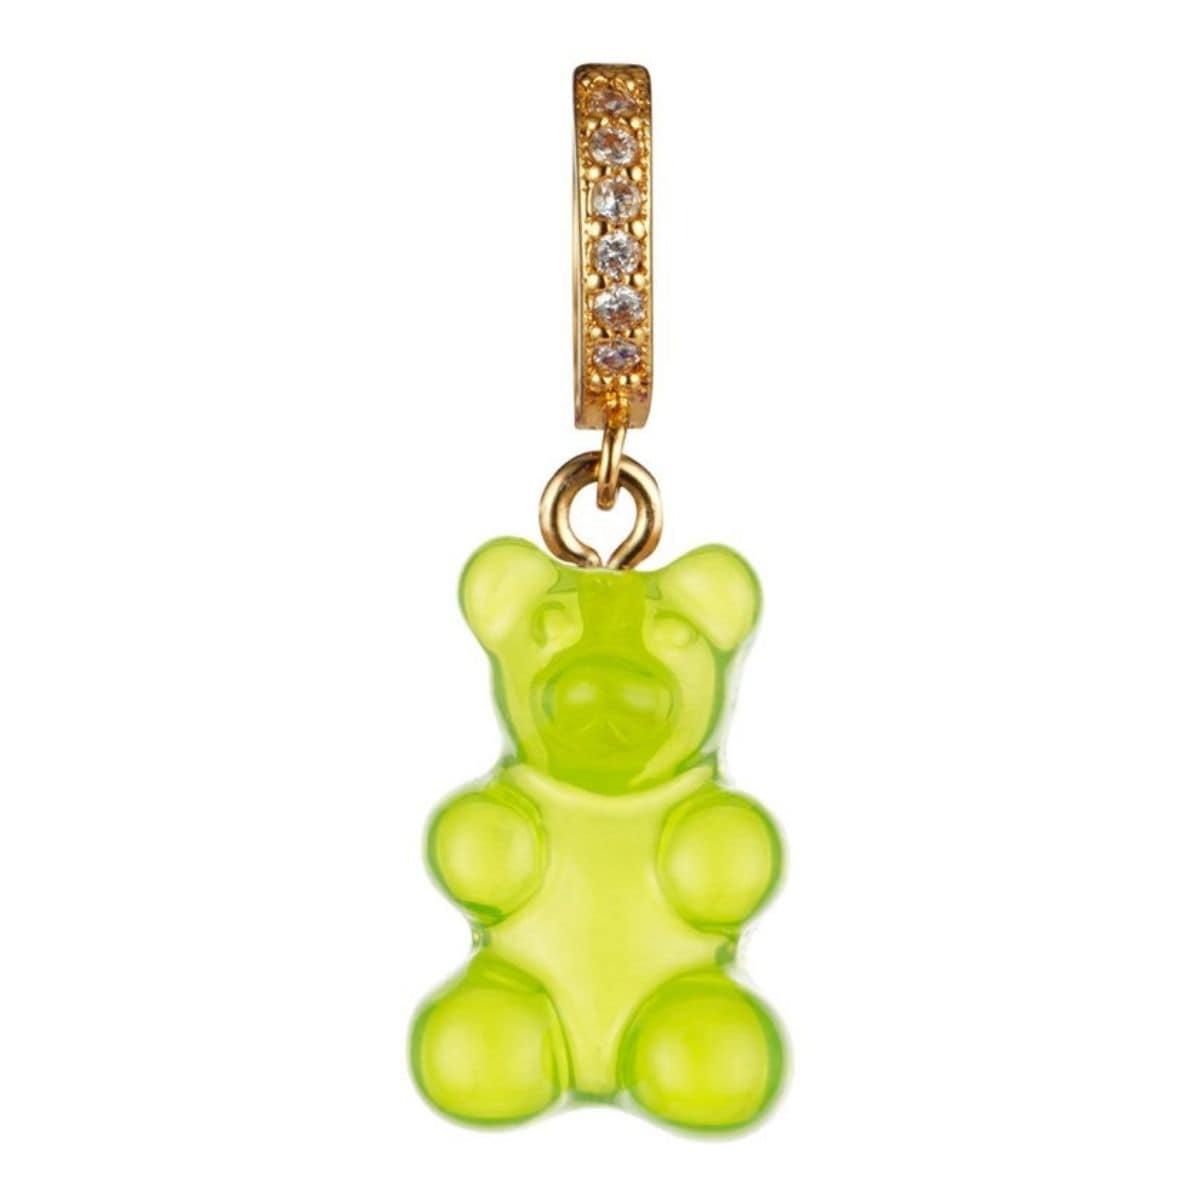 green gummy bear pendant charm - Gummy Bear Bling